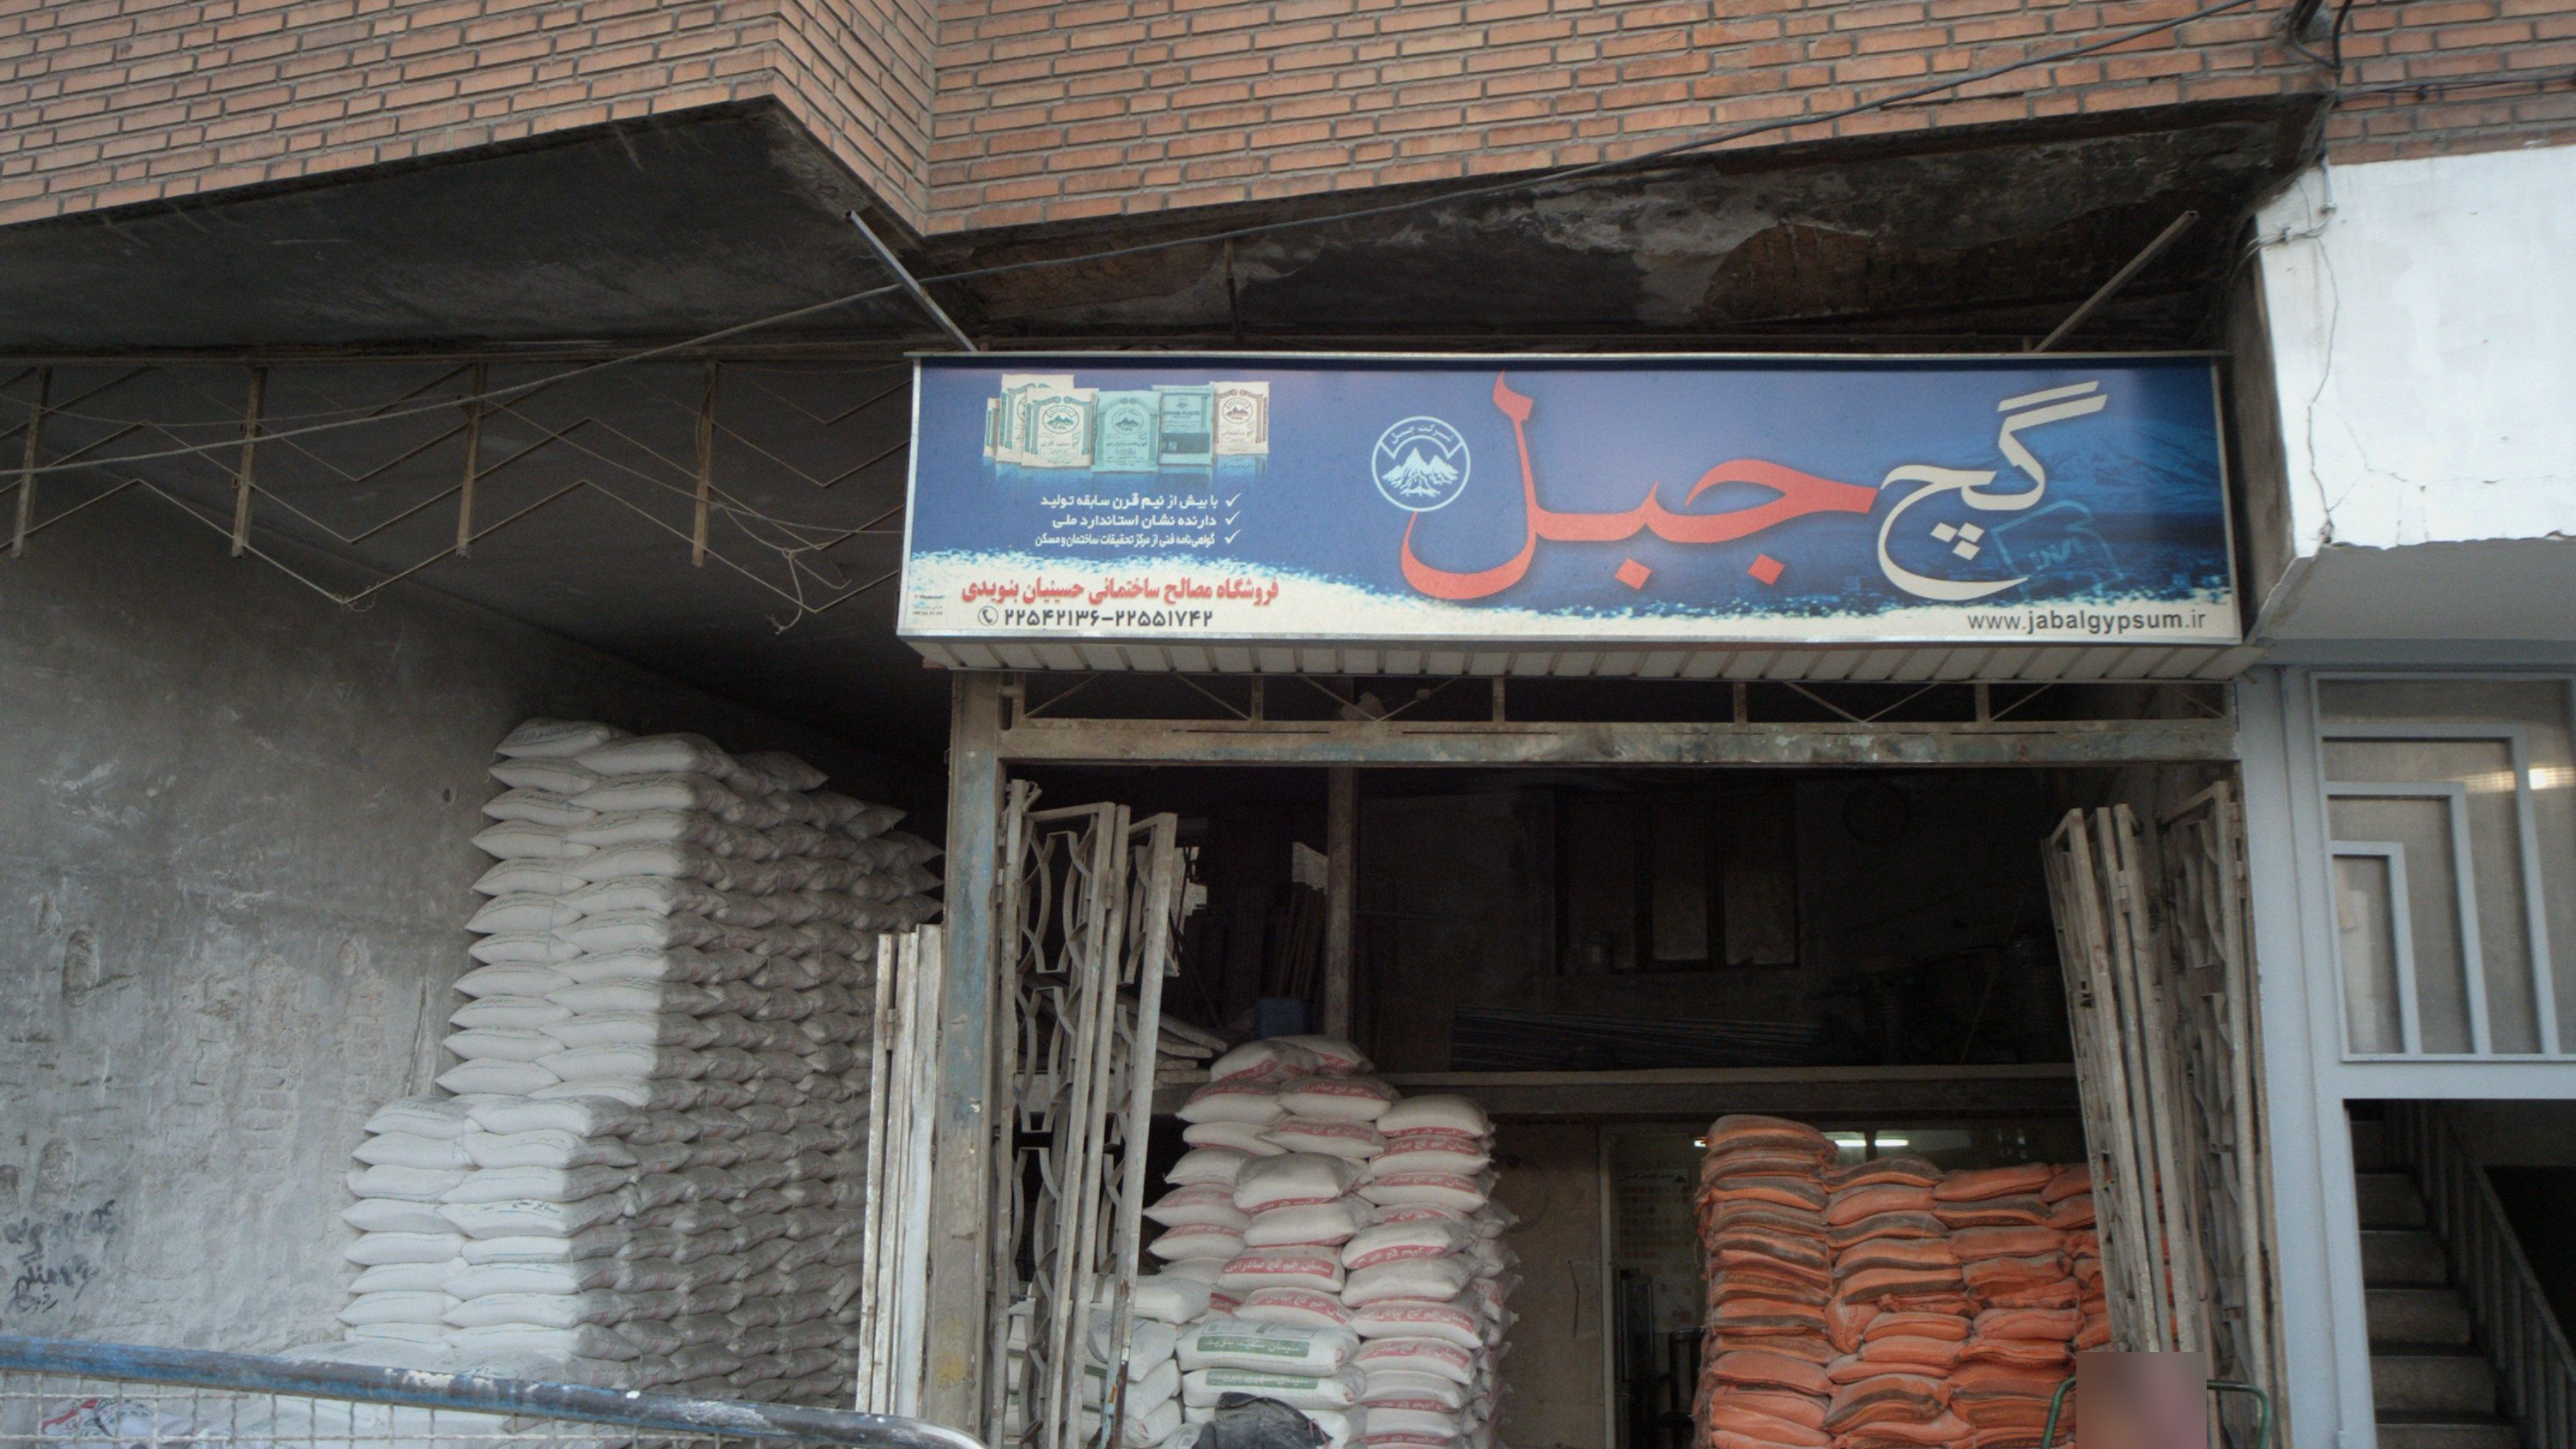 فروشگاه مصالح ساختمانی حسینیان بنویدی